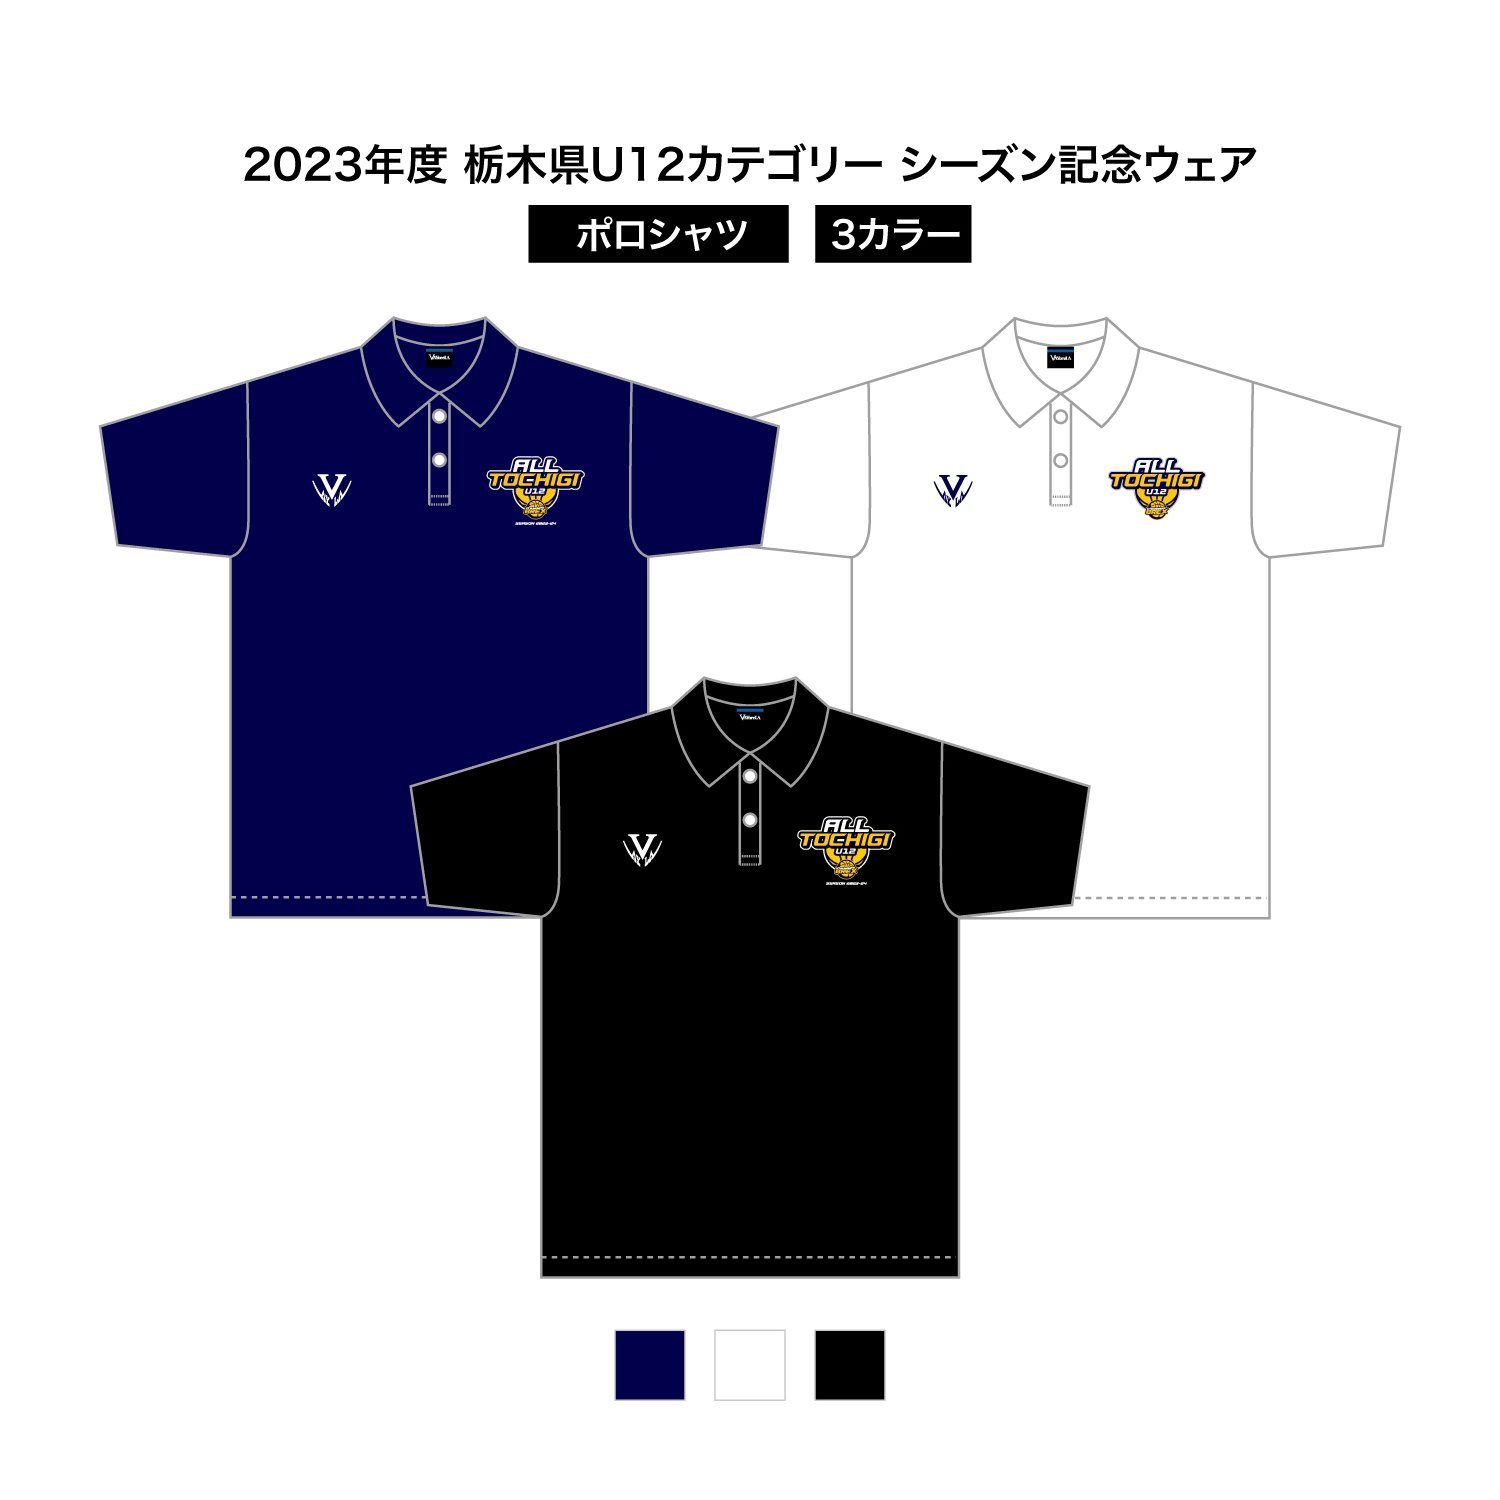 2023 栃木県U12 シーズン記念ウェア ドライポロシャツ